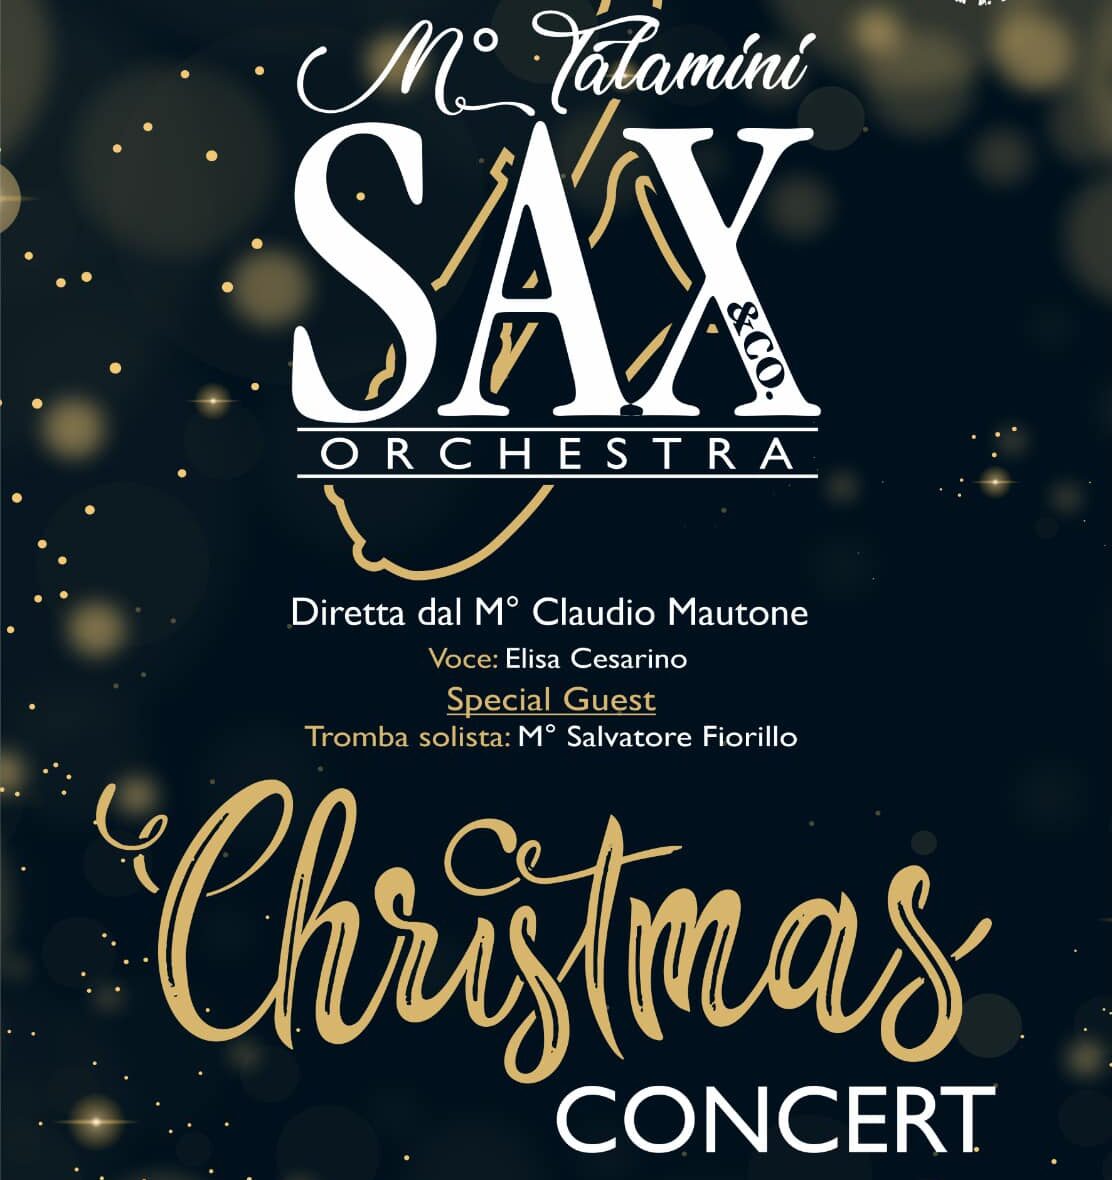 Christmas Concert all’auditorium di Sapri con l’Orchestra Talamini Sax&Co